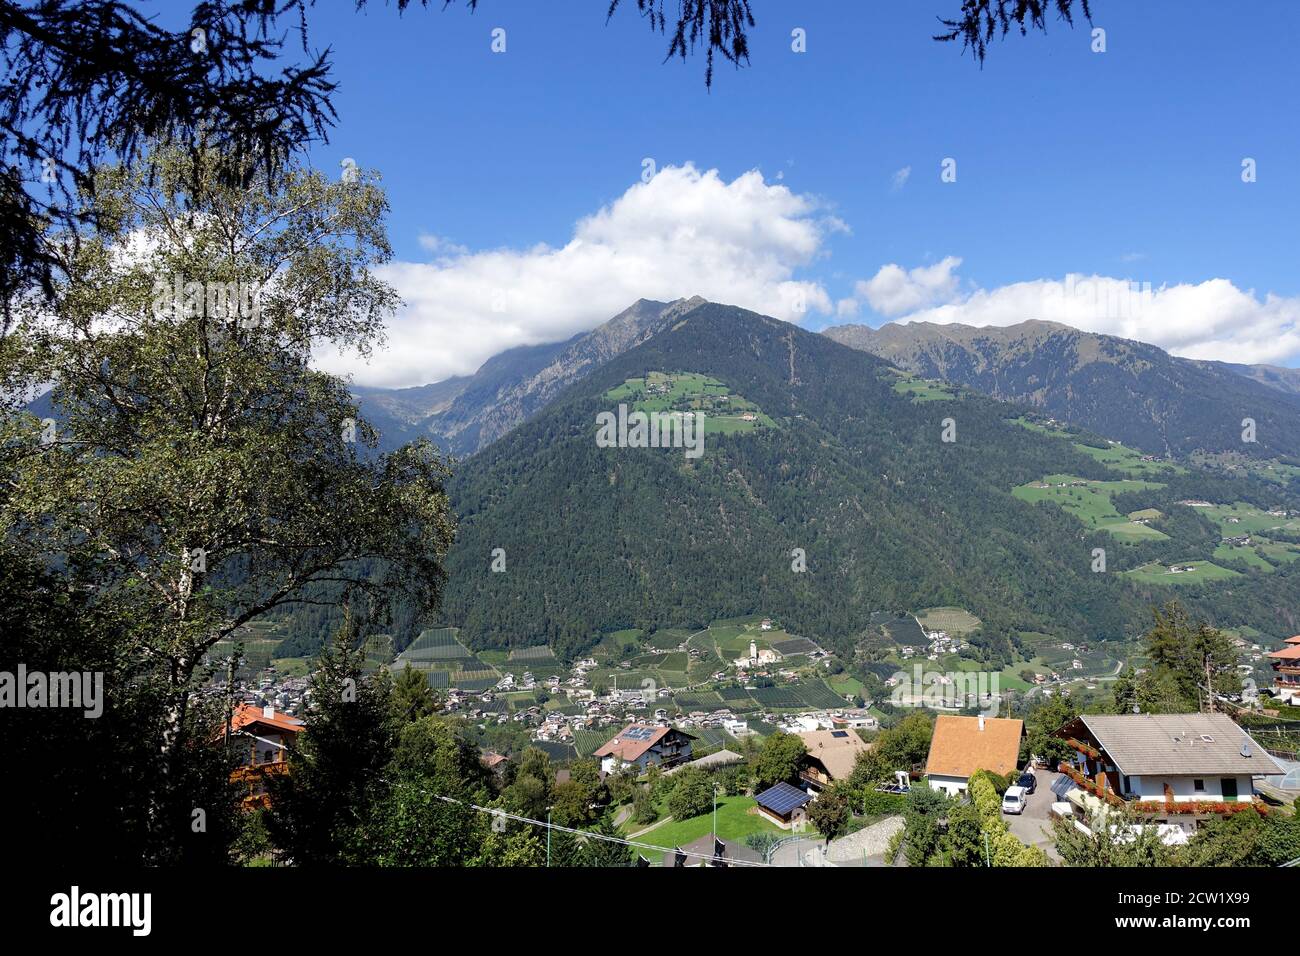 Blick vom Schenner Waalweg über das Passeier Tal auf Riffian und die Berge der Texel-Gruppe,Schenna,Südtirol, Italien Banque D'Images